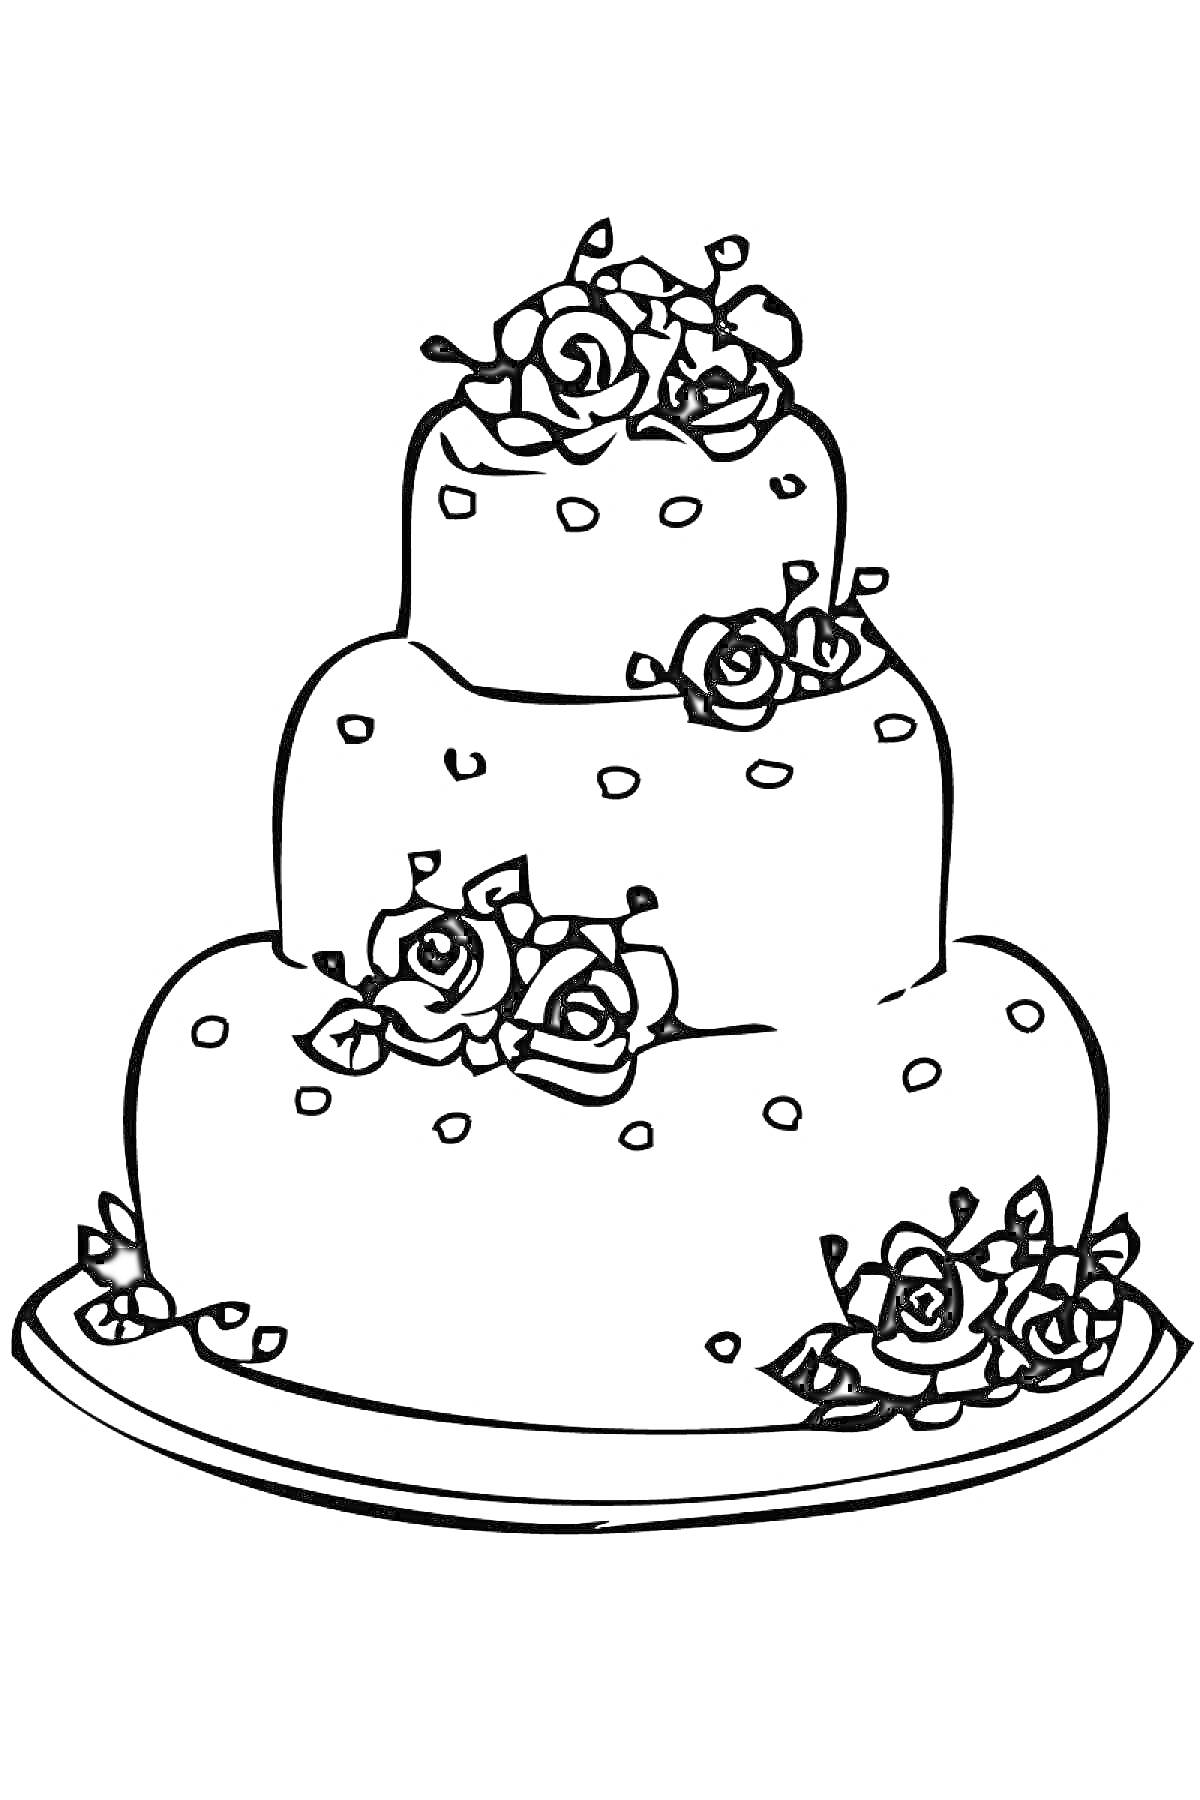 Трехуровневый торт с кремовыми розами на тарелке